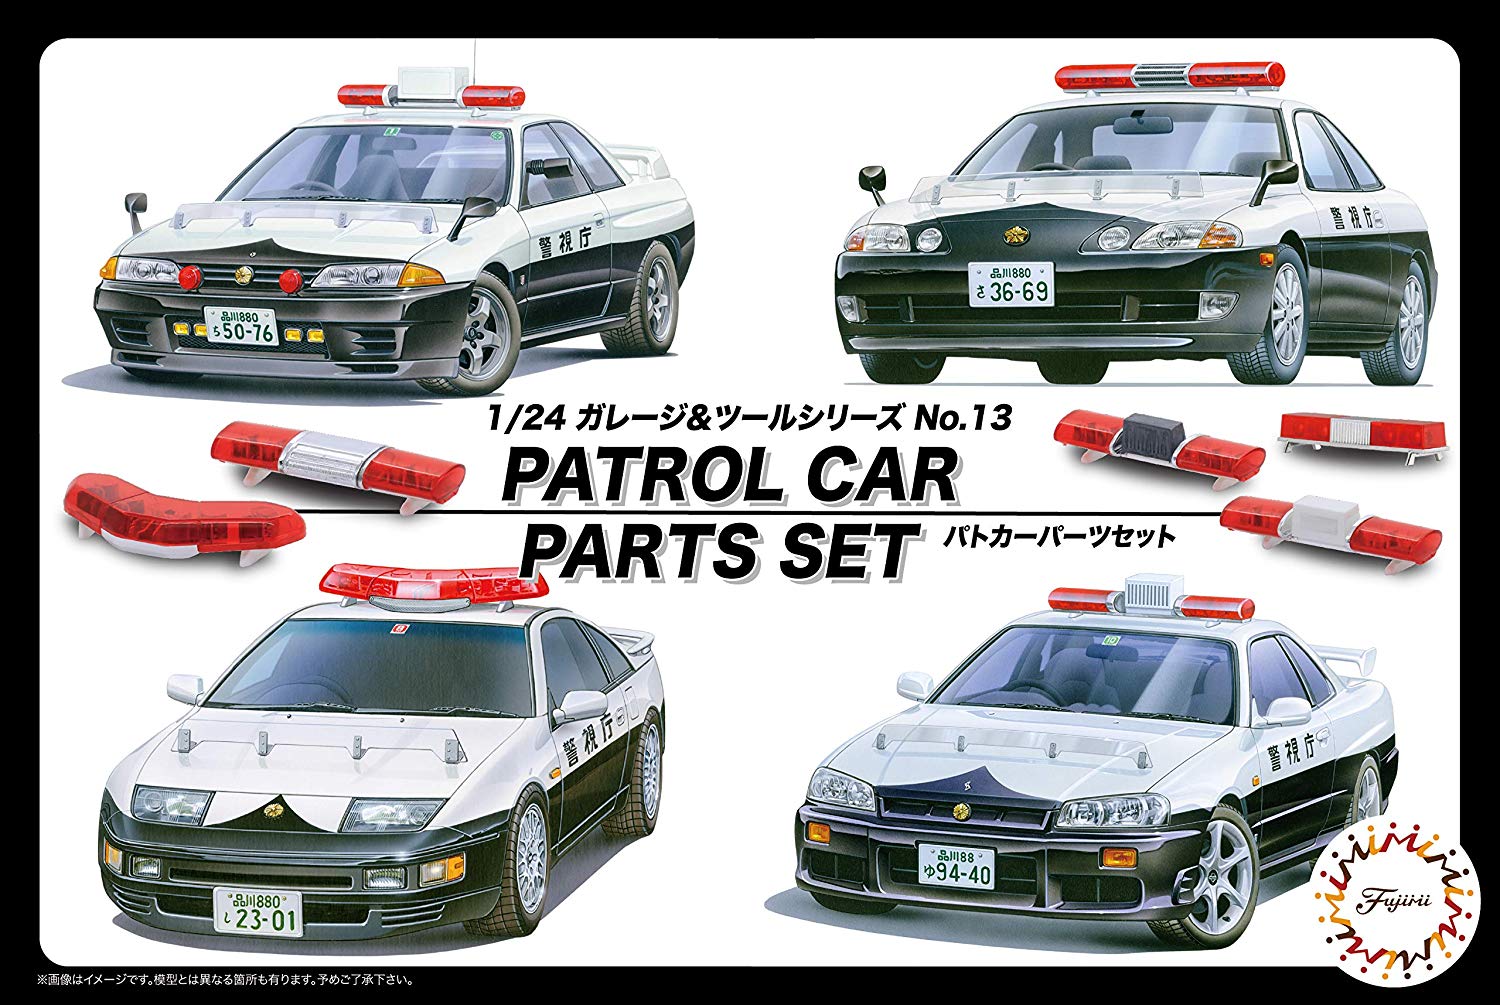 Police Car Parts Set